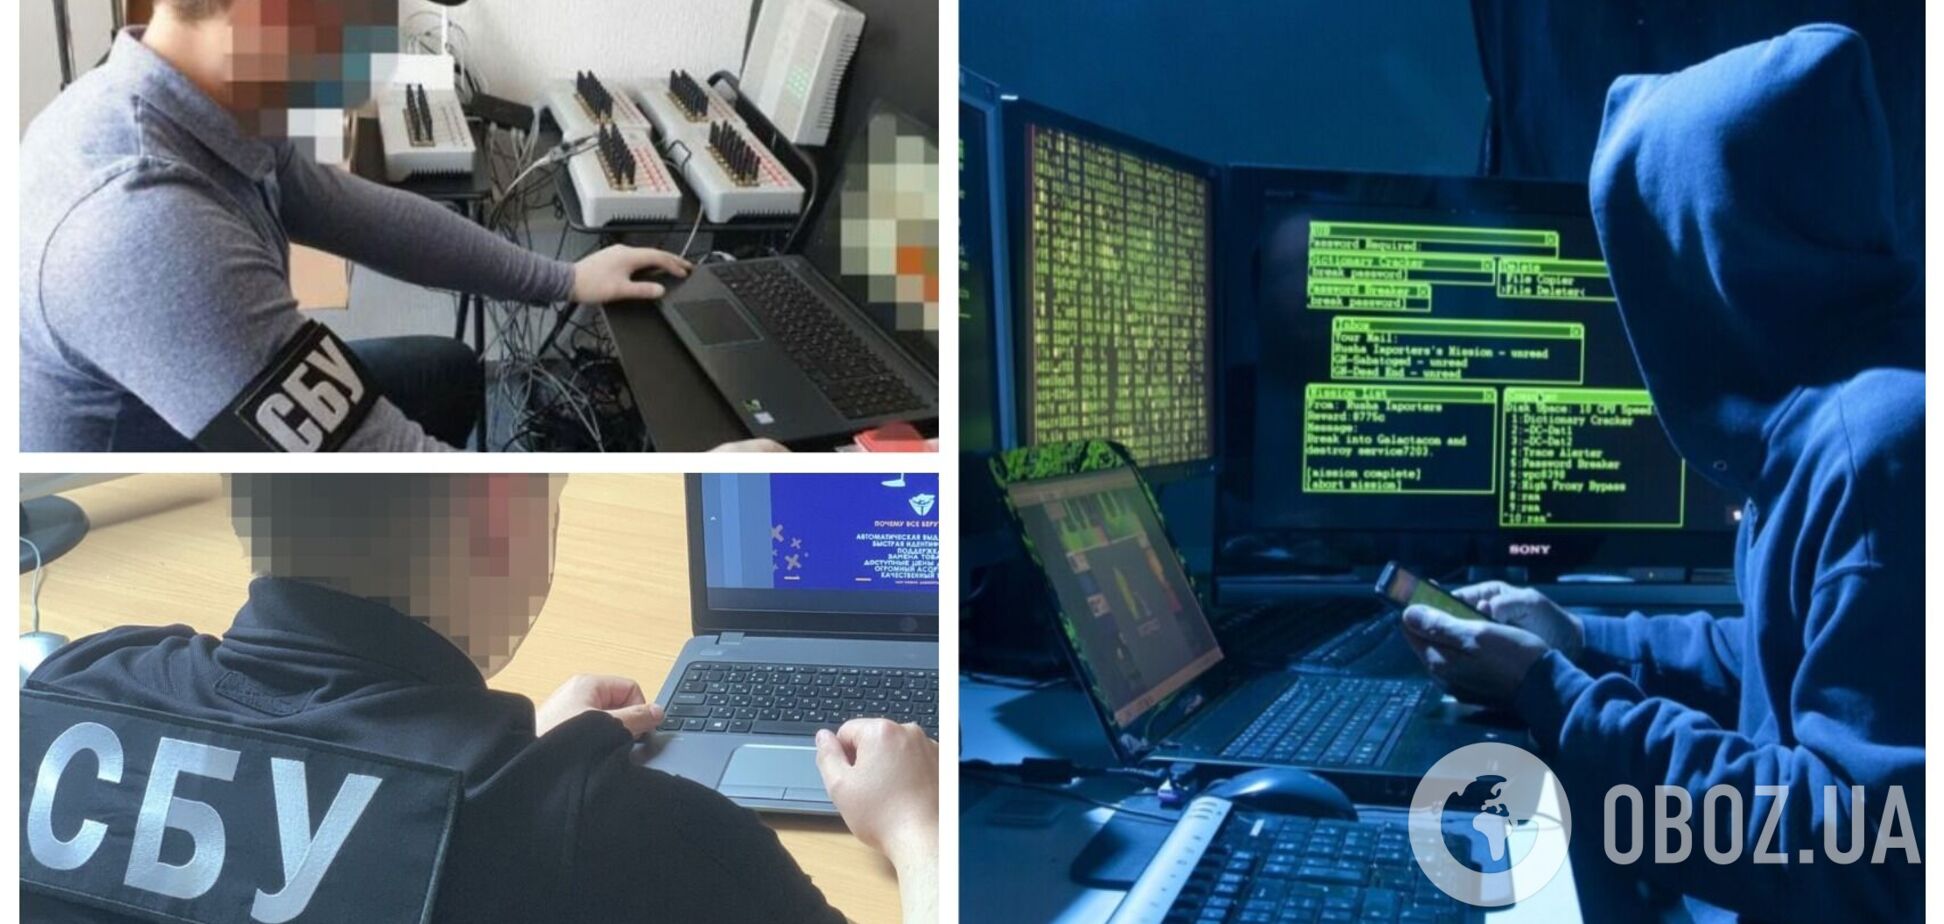 Россия в день полномасштабного вторжения хотела уничтожить всю киберзащиту страны: в СБУ раскрыли подробности